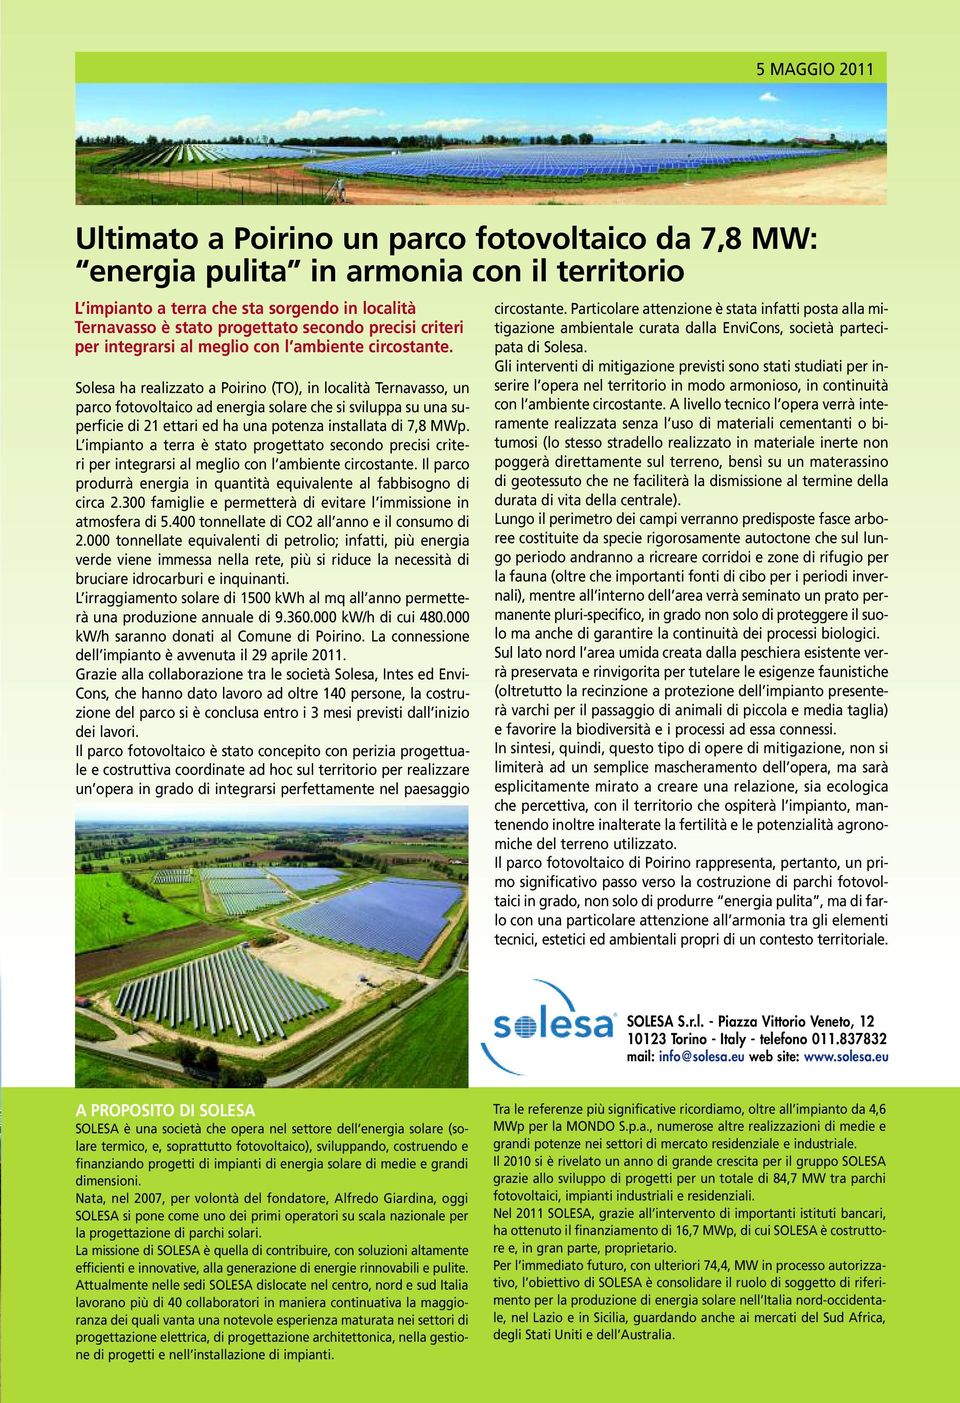 Solesa ha realizzato a Poirino (TO), in località Ternavasso, un parco fotovoltaico ad energia solare che si sviluppa su una superficie di 21 ettari ed ha una potenza installata di 7,8 MWp.